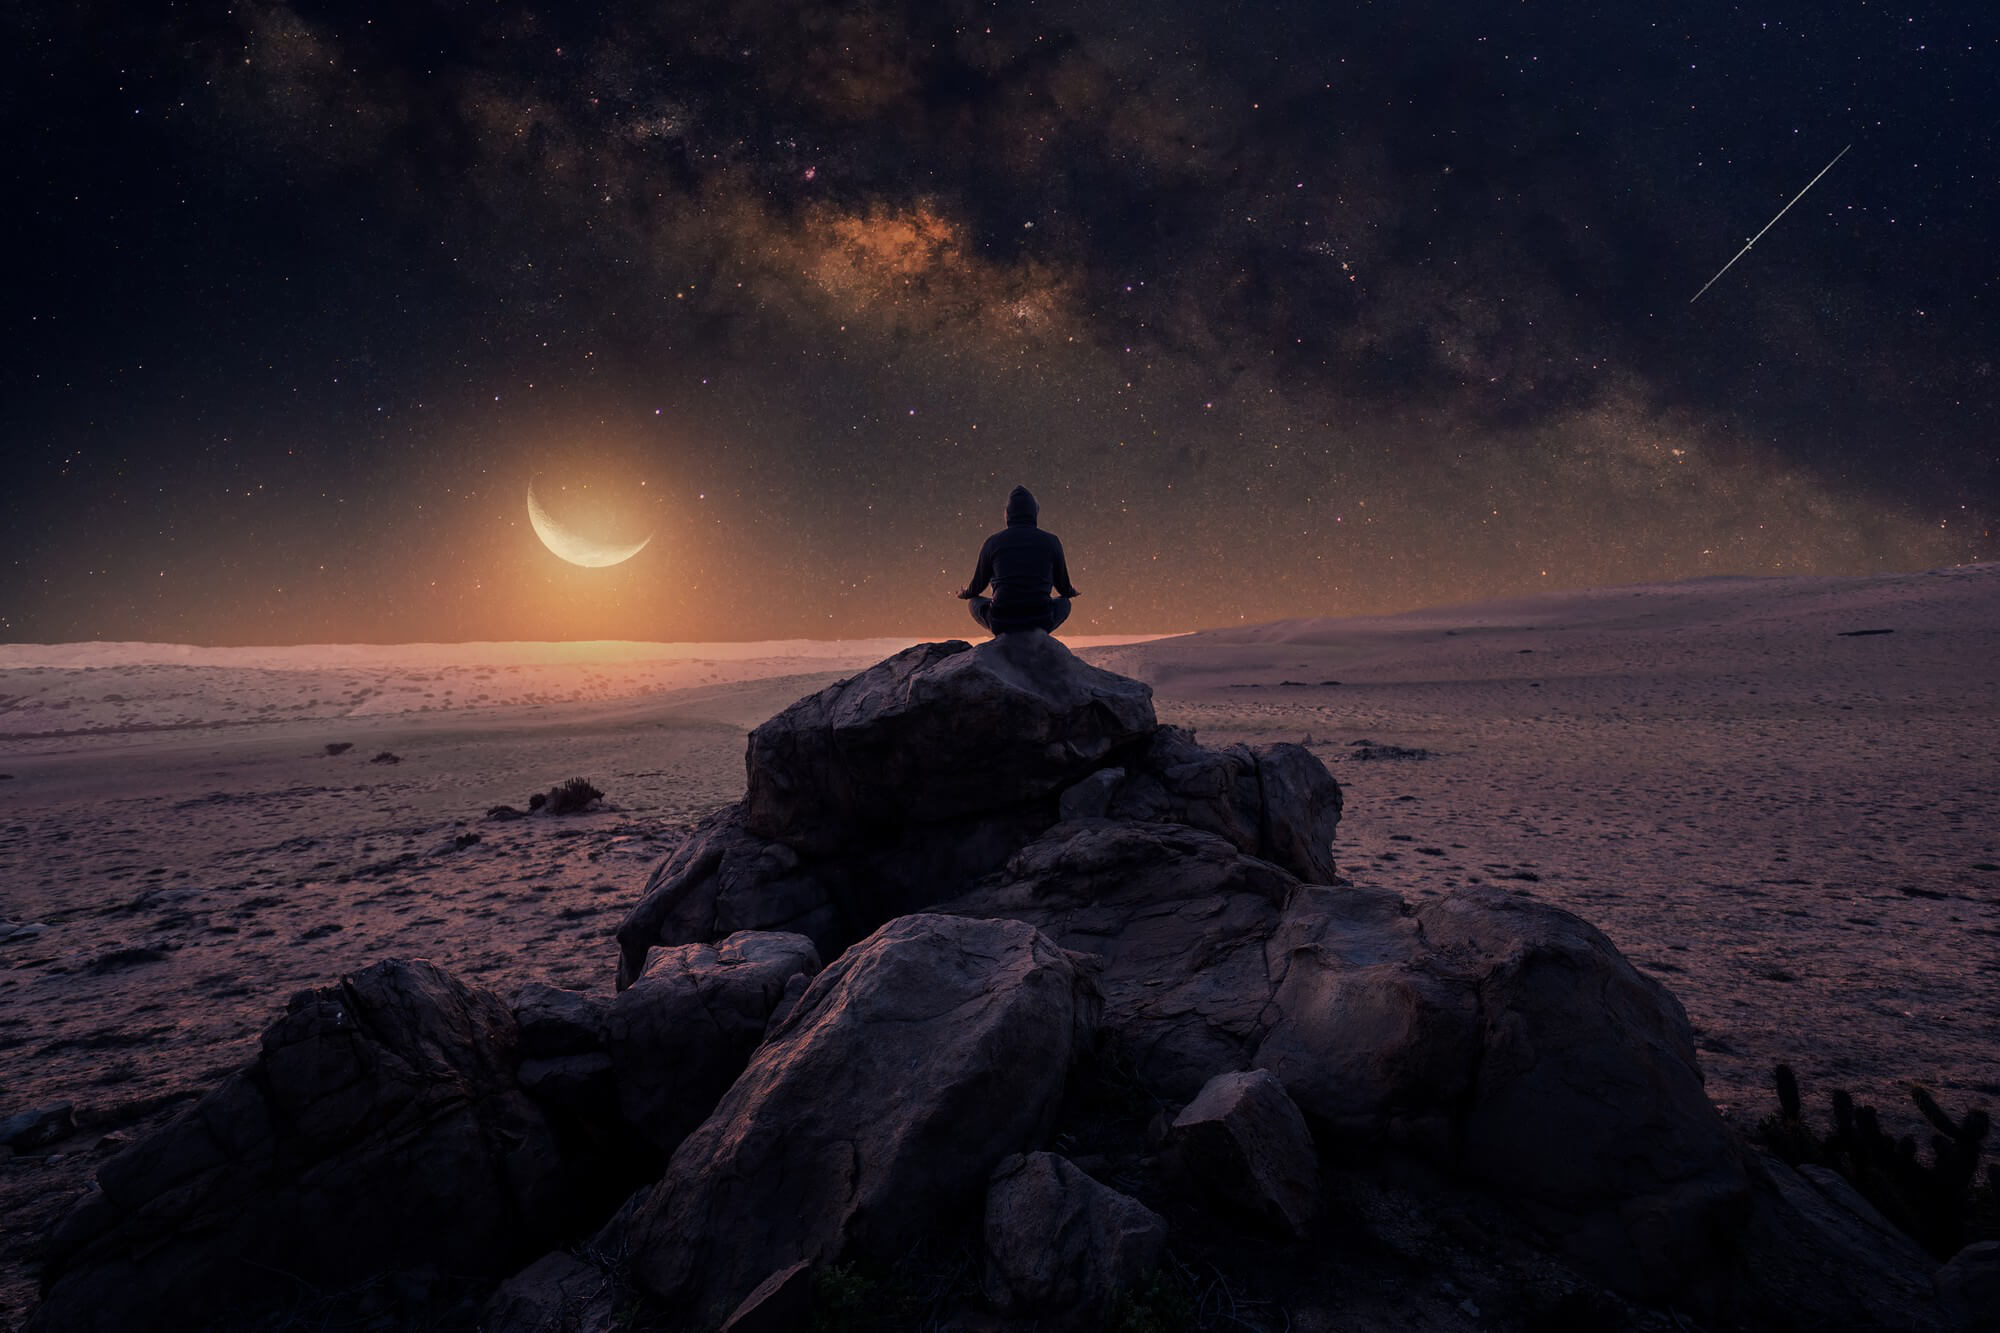 Ein Mann meditiert inmitten einer Wüste. Er sitzt auf einem kleinen Felsen und ist vom sternenbedeckten Nachthimmel umgeben.